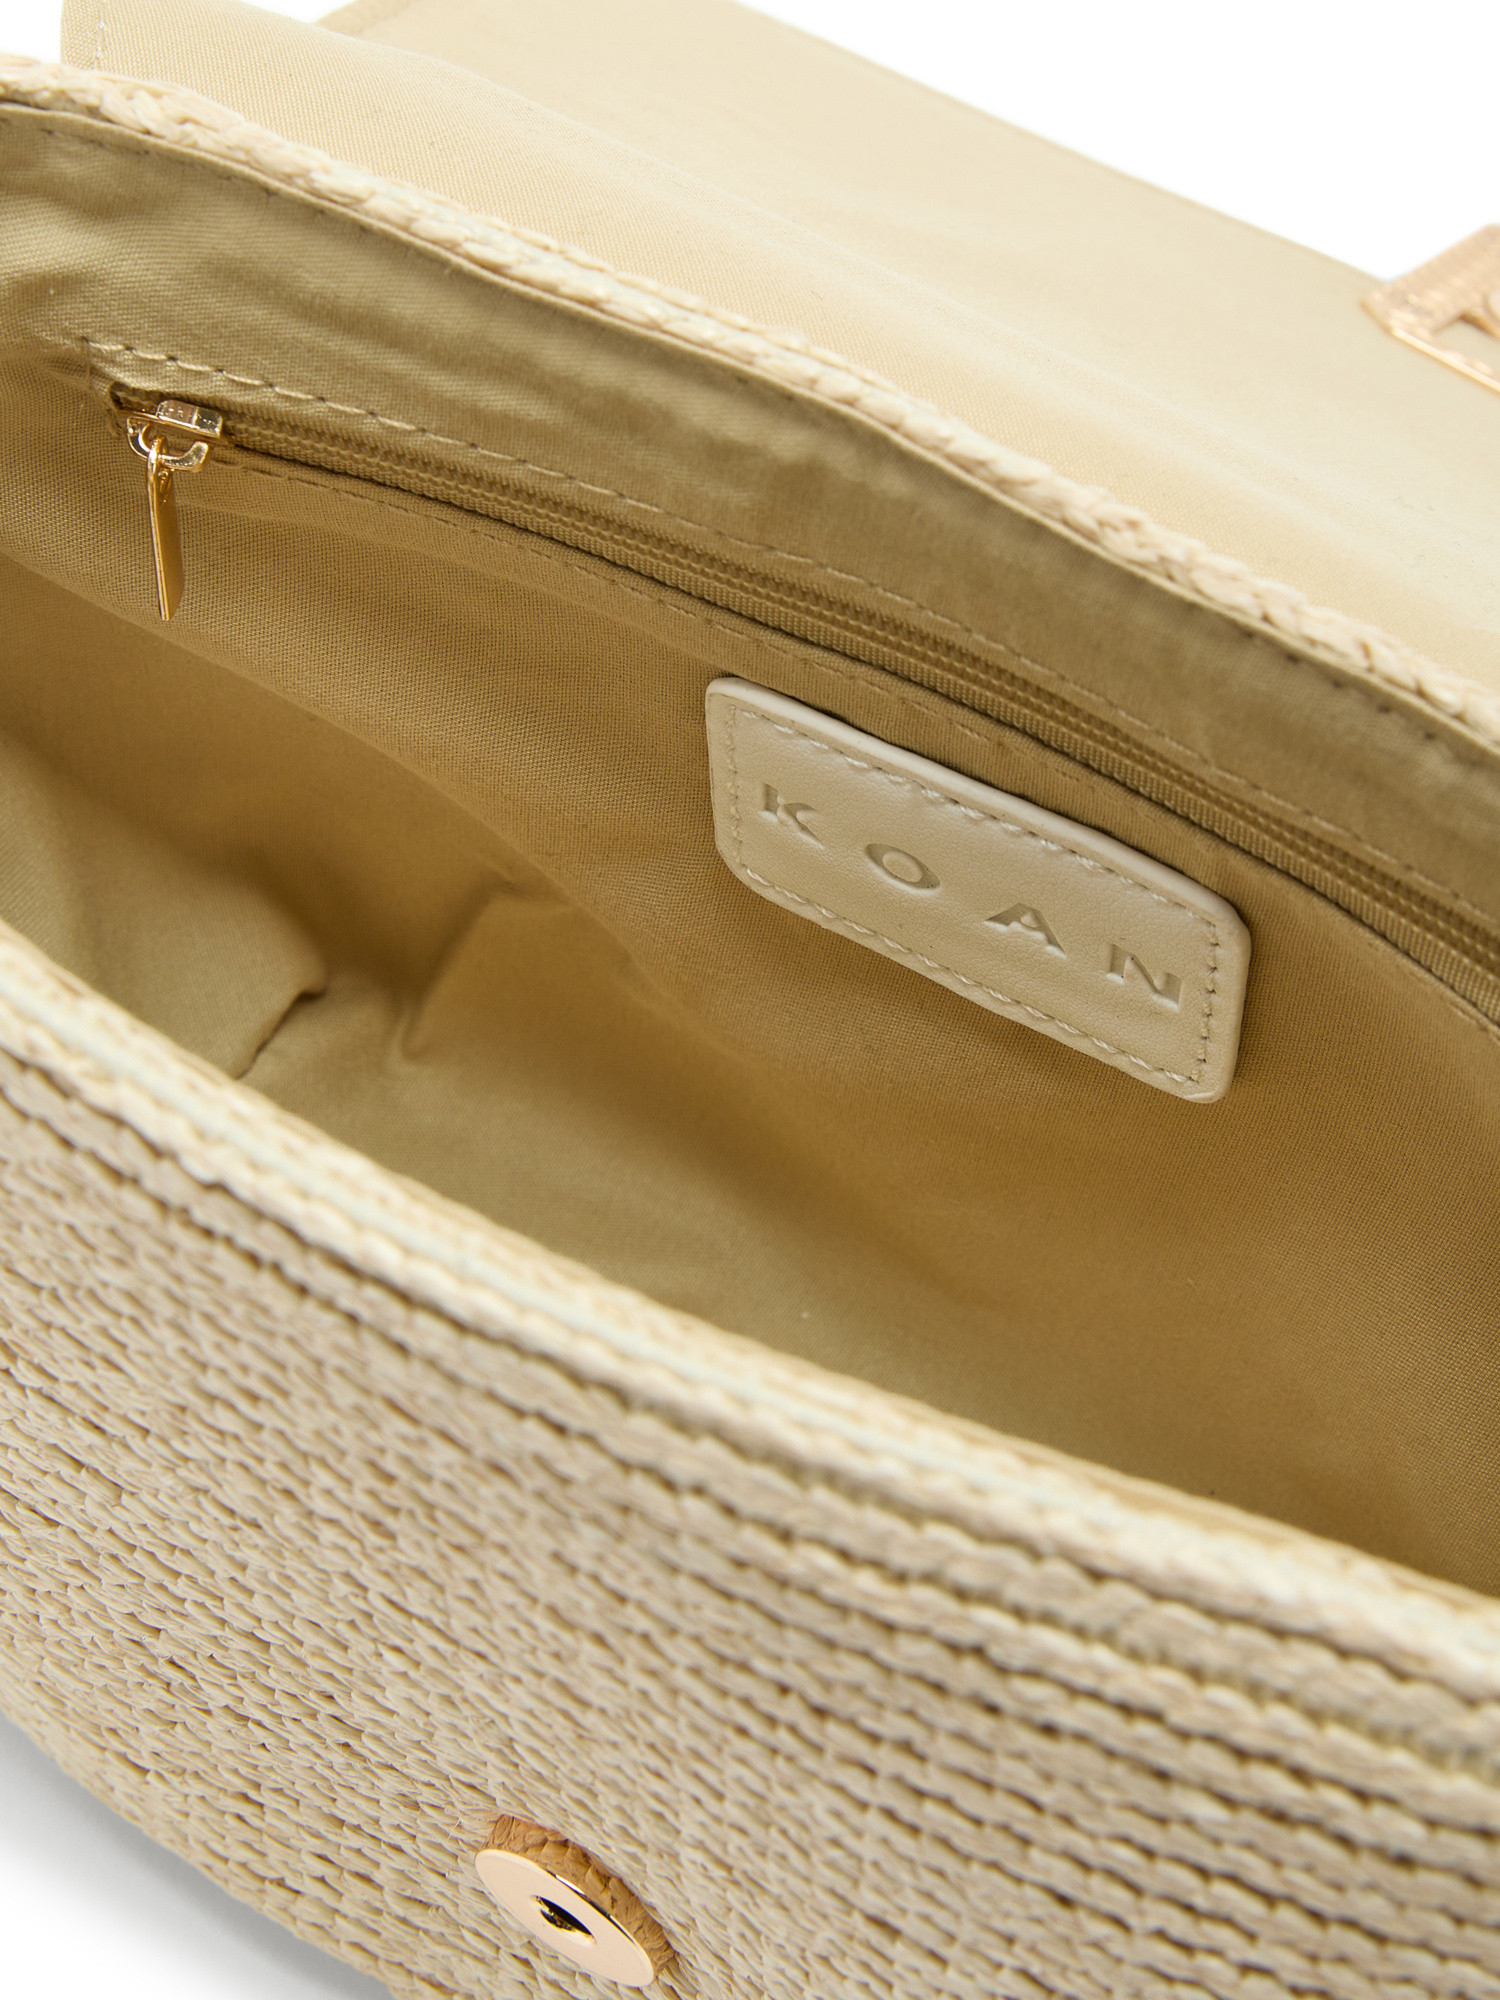 Koan - Straw shoulder bag, White, large image number 2